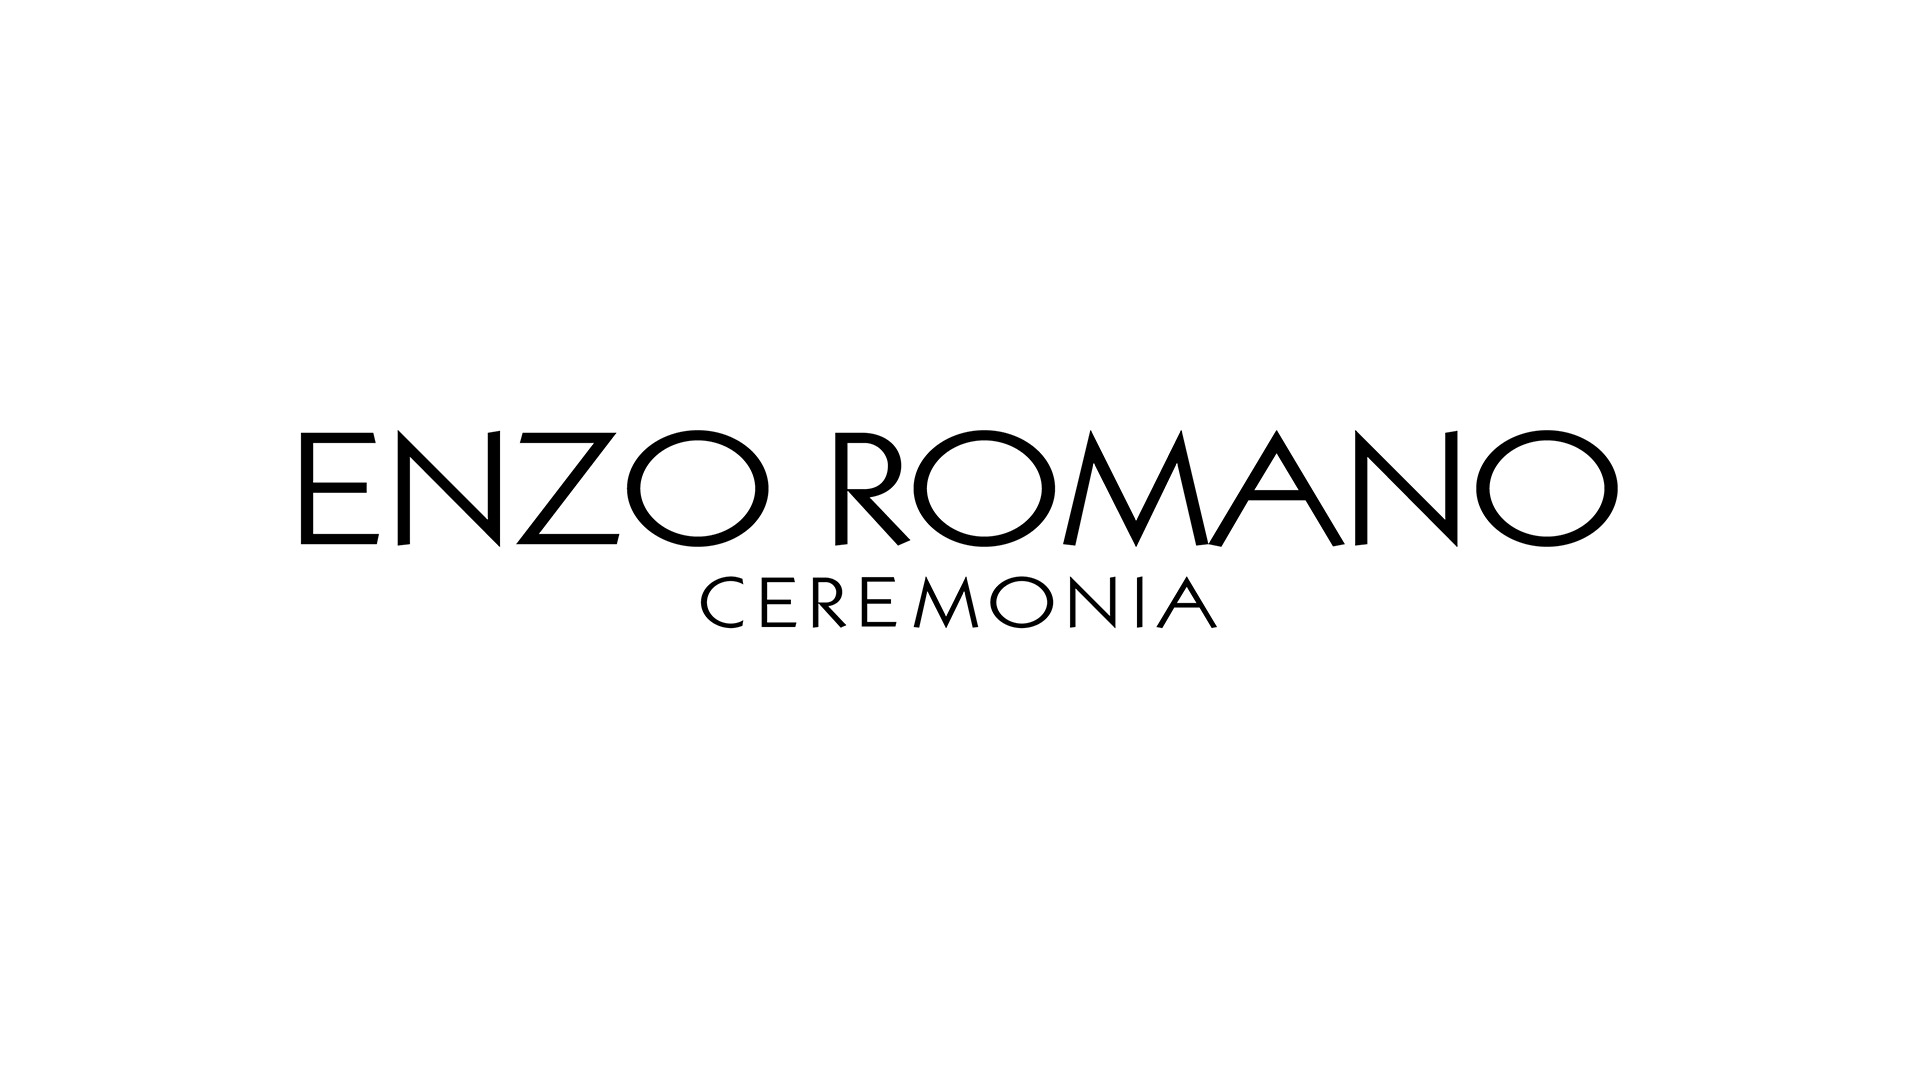 2 Enzo Romano